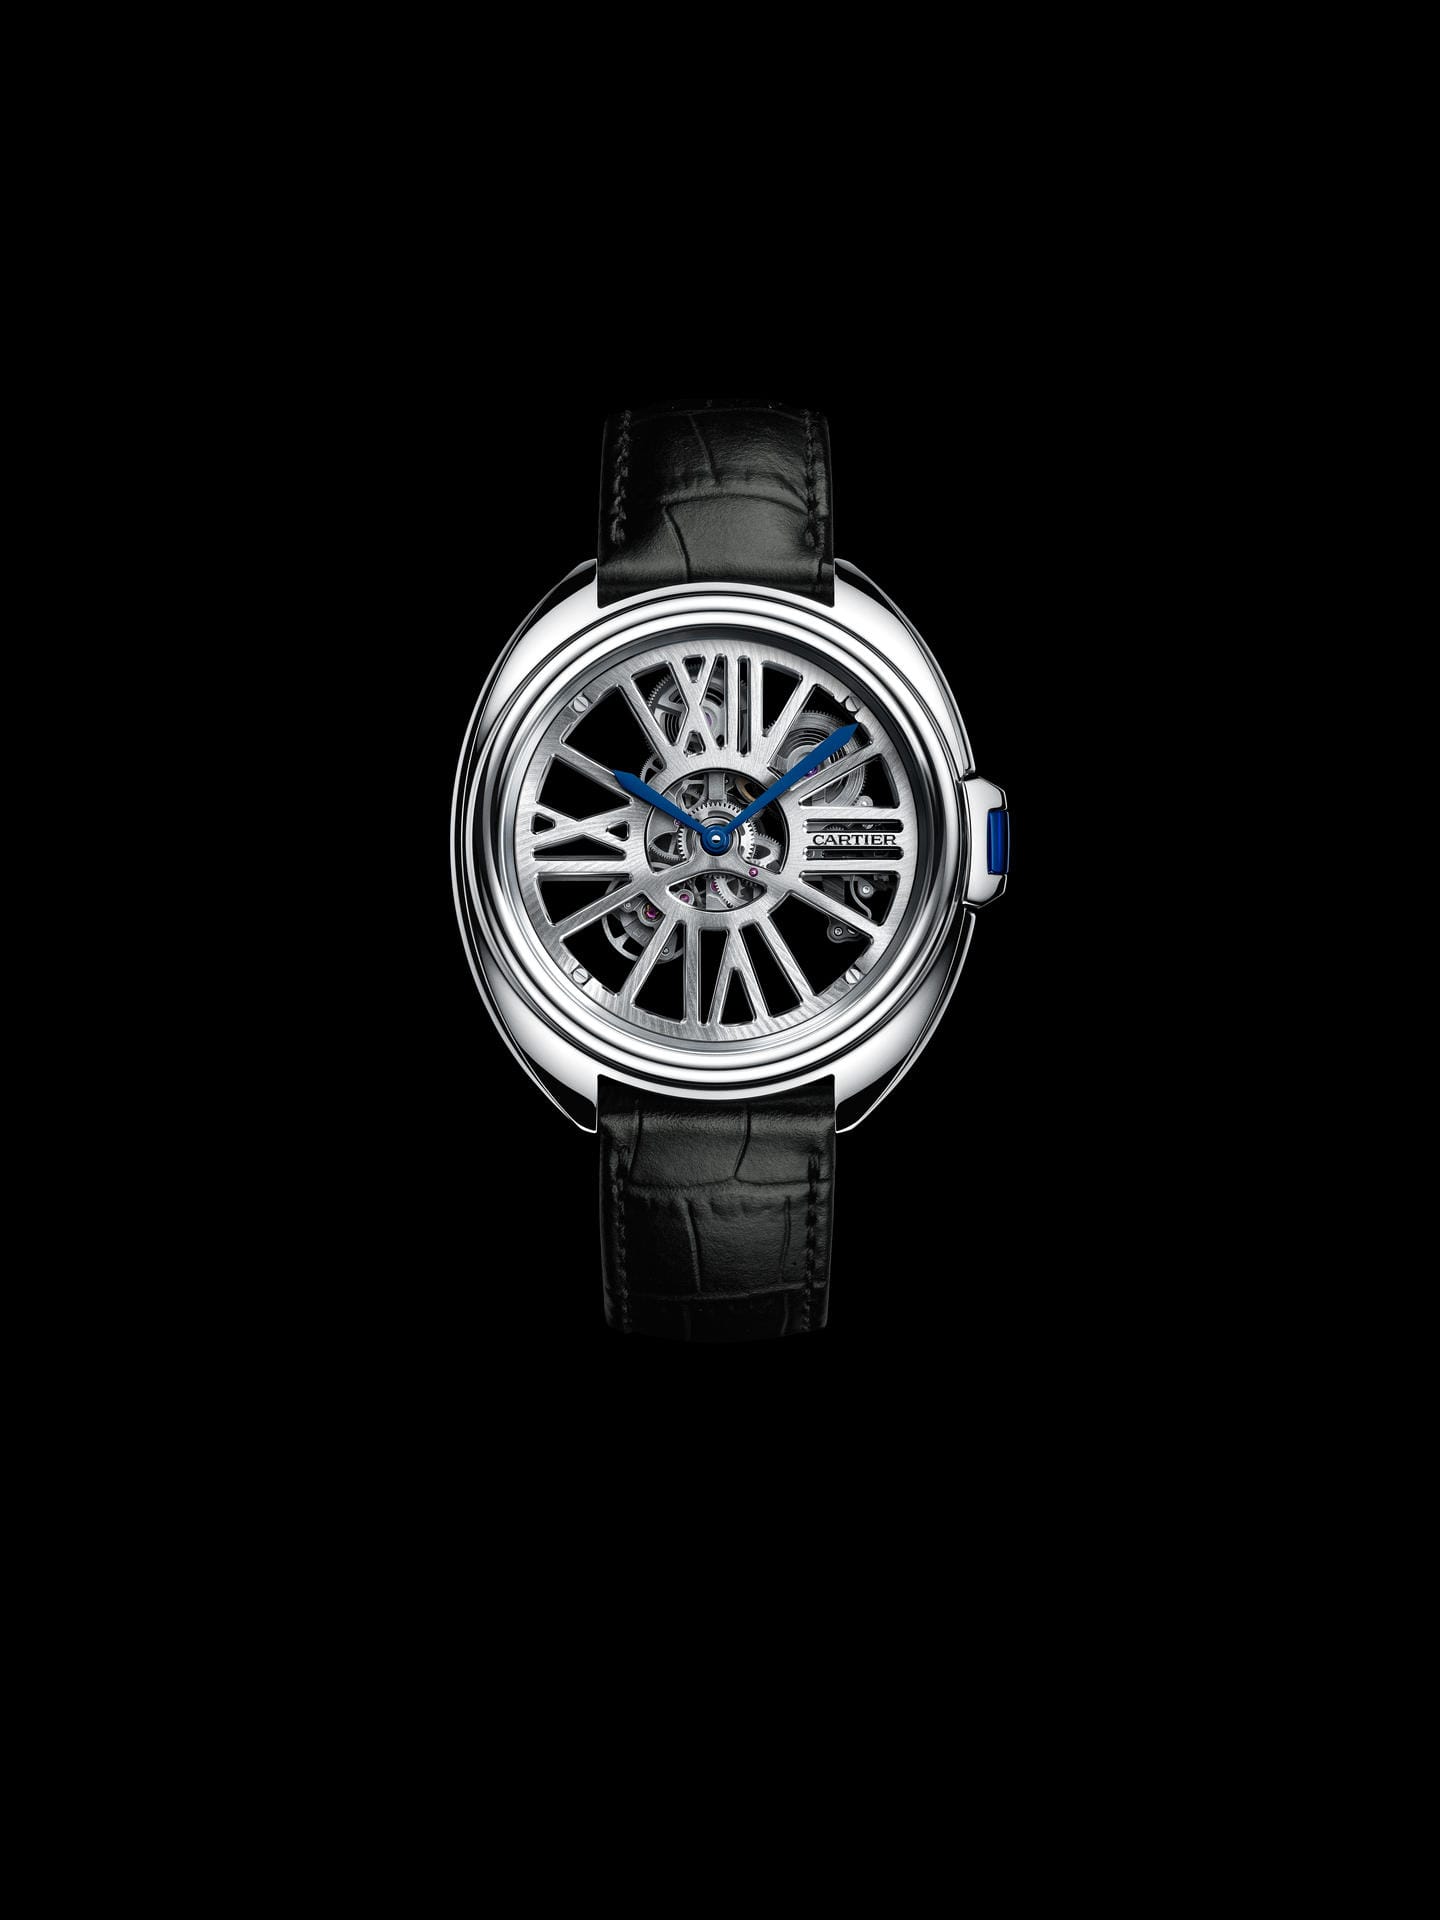 Ebenfalls einen Einblick ins Uhrwerk gewährt die Clé de Cartier Automatic Skeleton. Das Gehäuse besteht aus dem teuren Werkstoff Palladium. Rund 60.000 Euro kostet die Uhr.